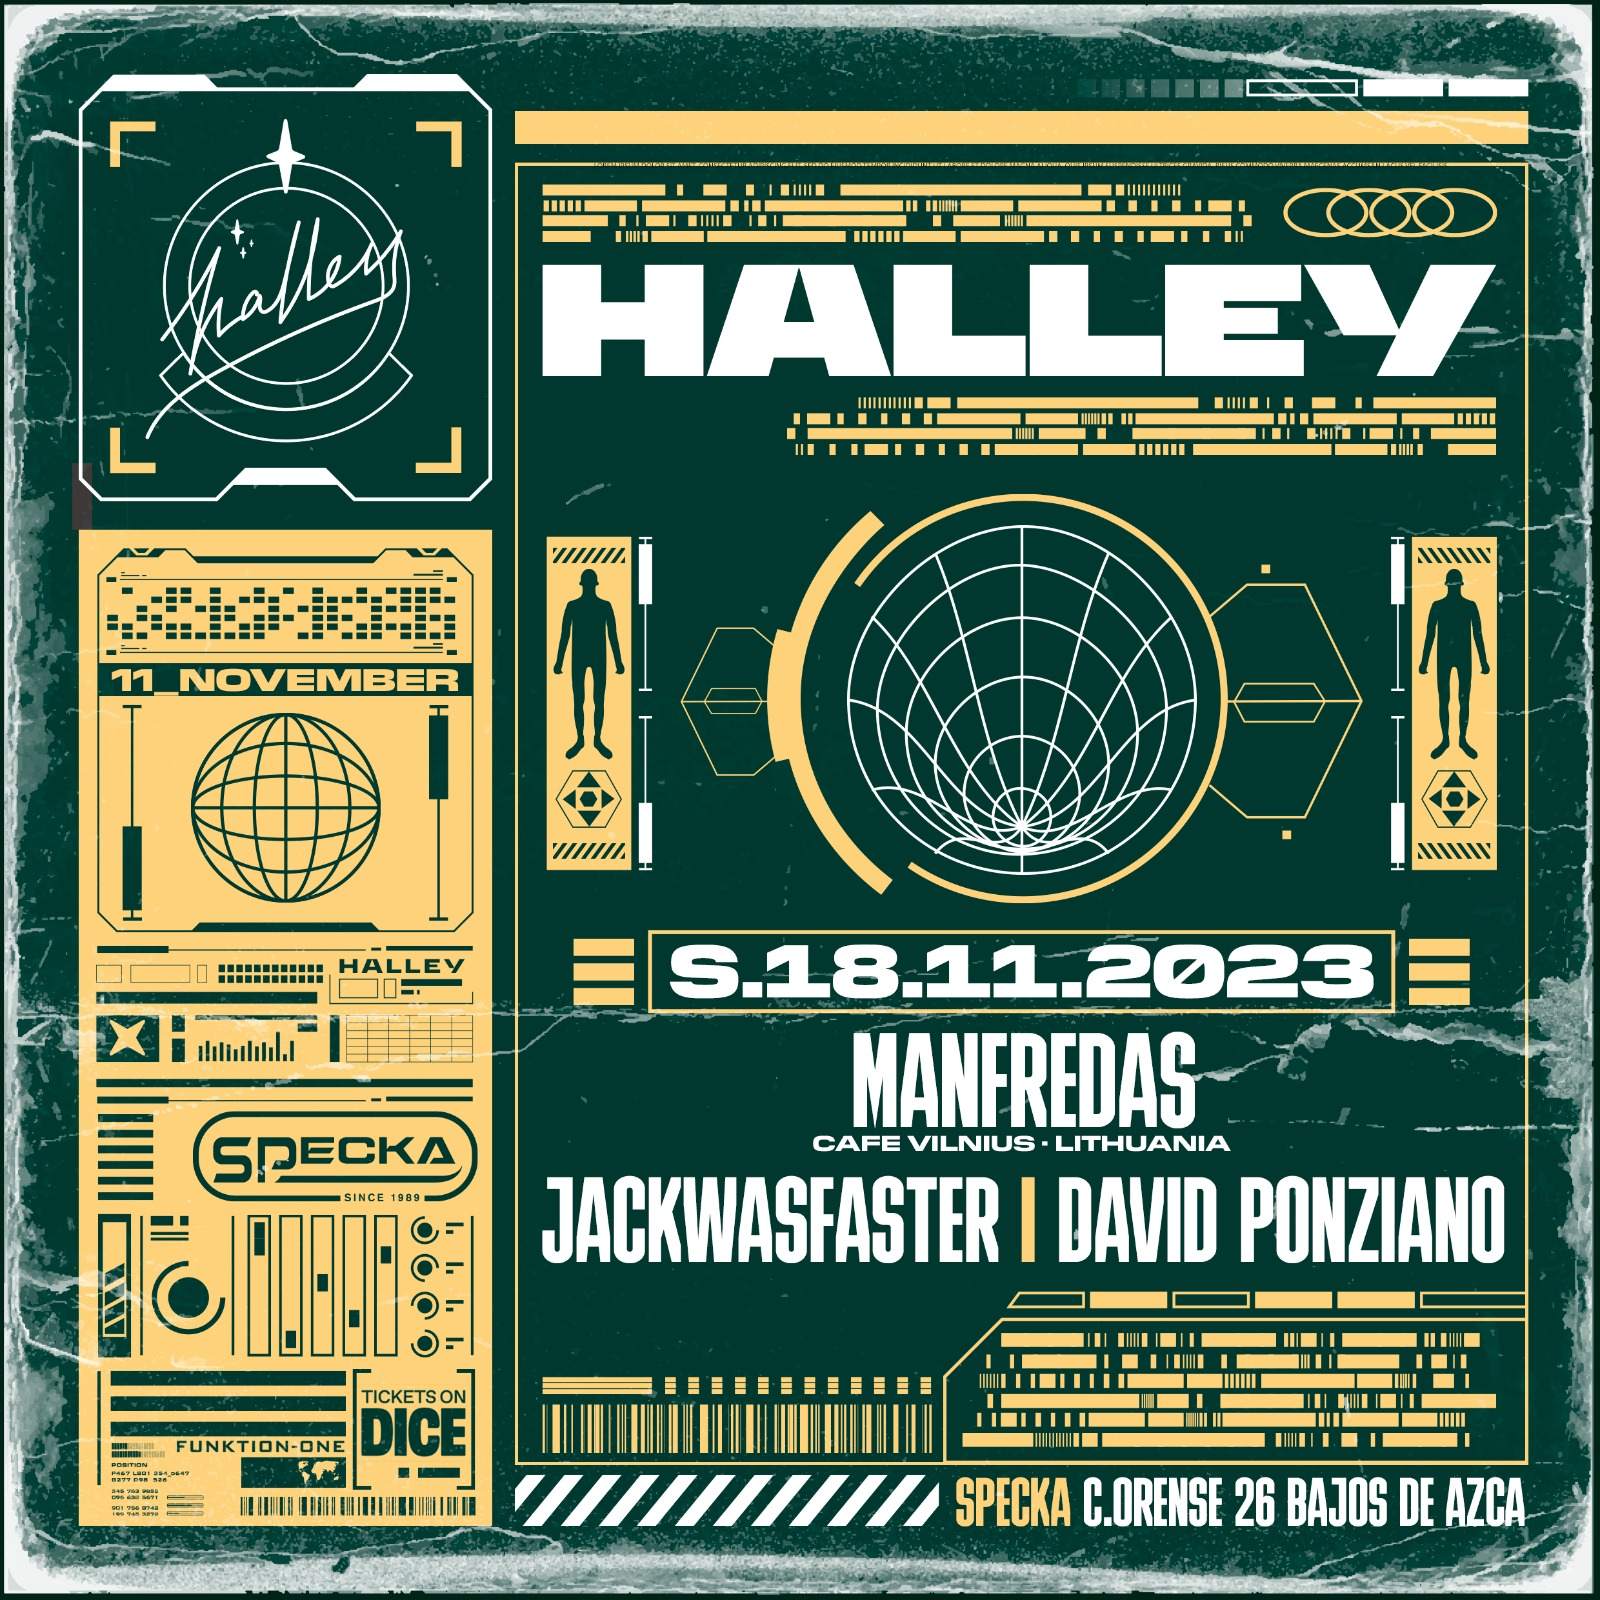 Manfredas + JackWasFaster + David Ponziano | Halley - フライヤー表